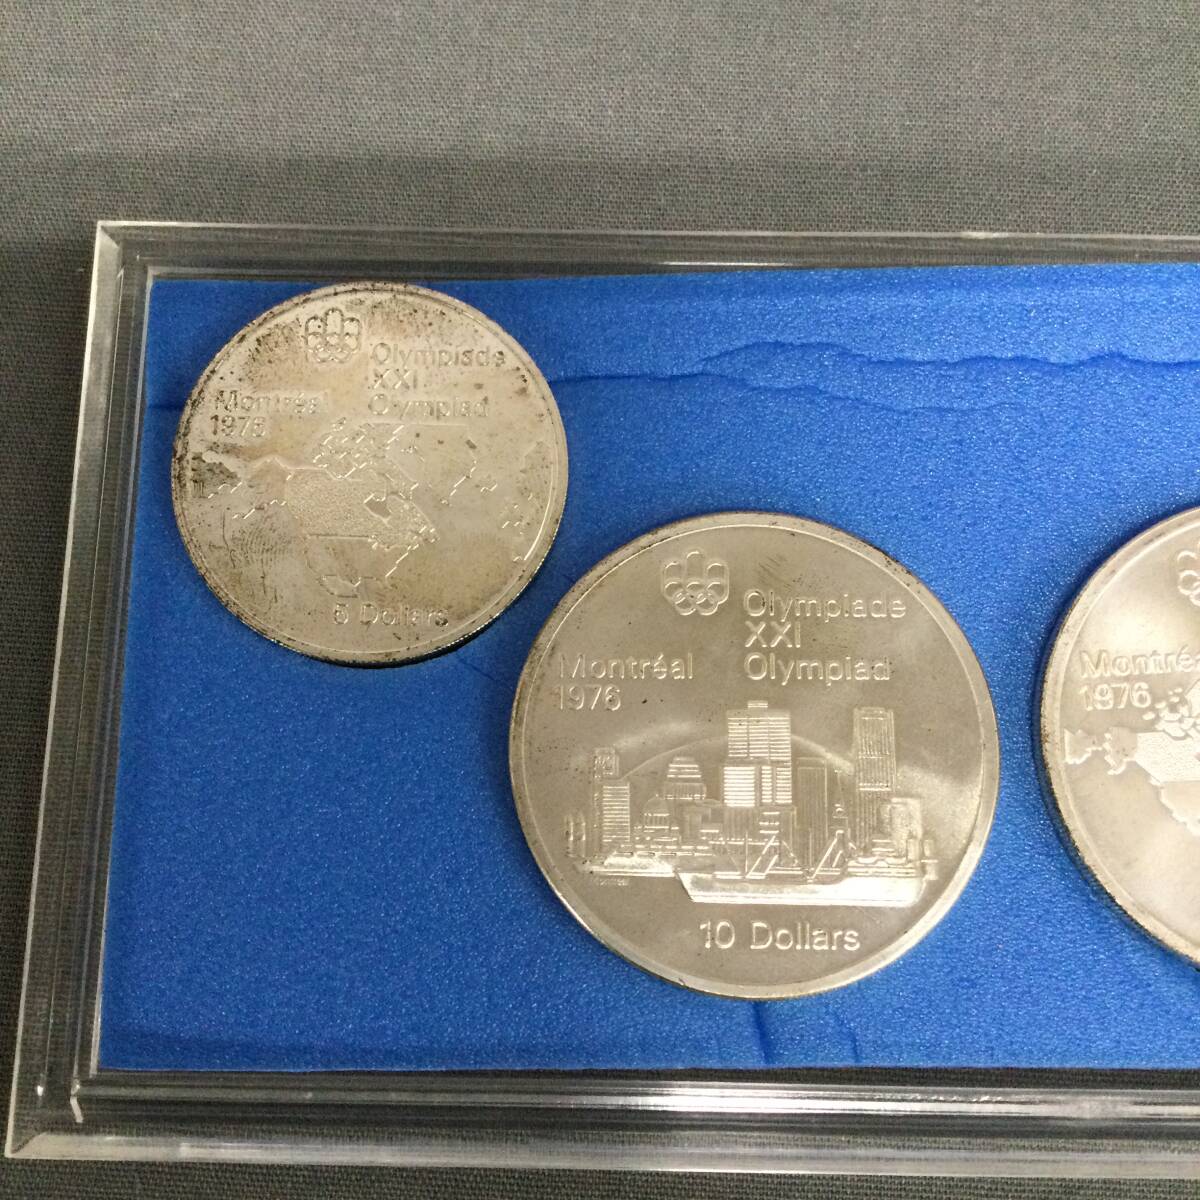 060327 257166 第21回オリンピック モントリオール大会 記念銀貨 記念コイン 日本スポーツメタル協会 コレクション の画像6